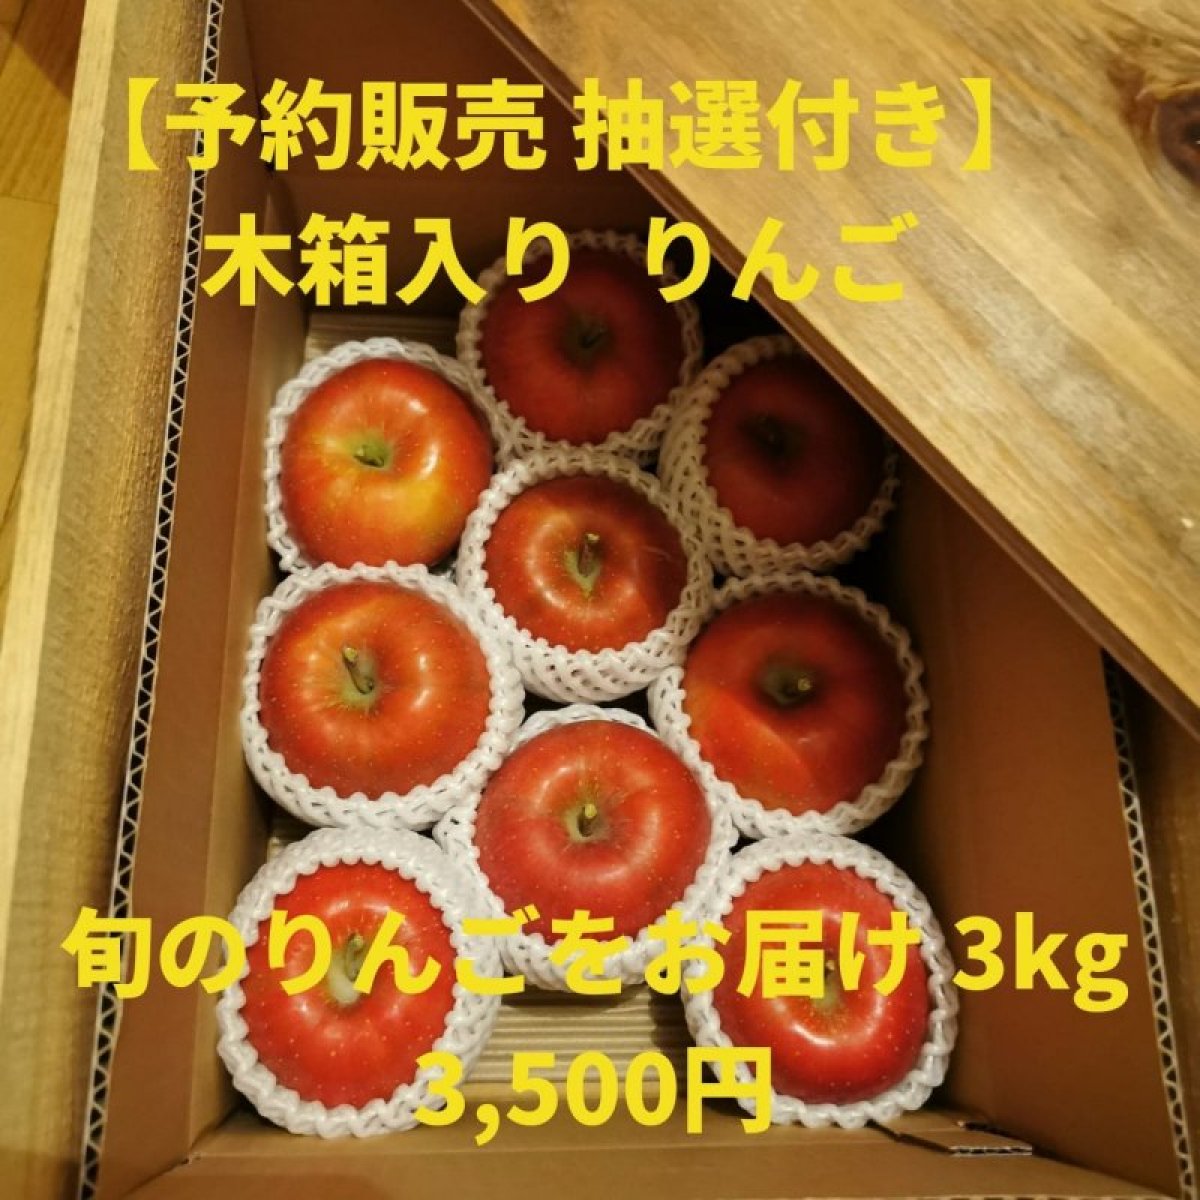 【予約販売+抽選付き】木箱入りりんご  3kg〜旬のりんごをお届け